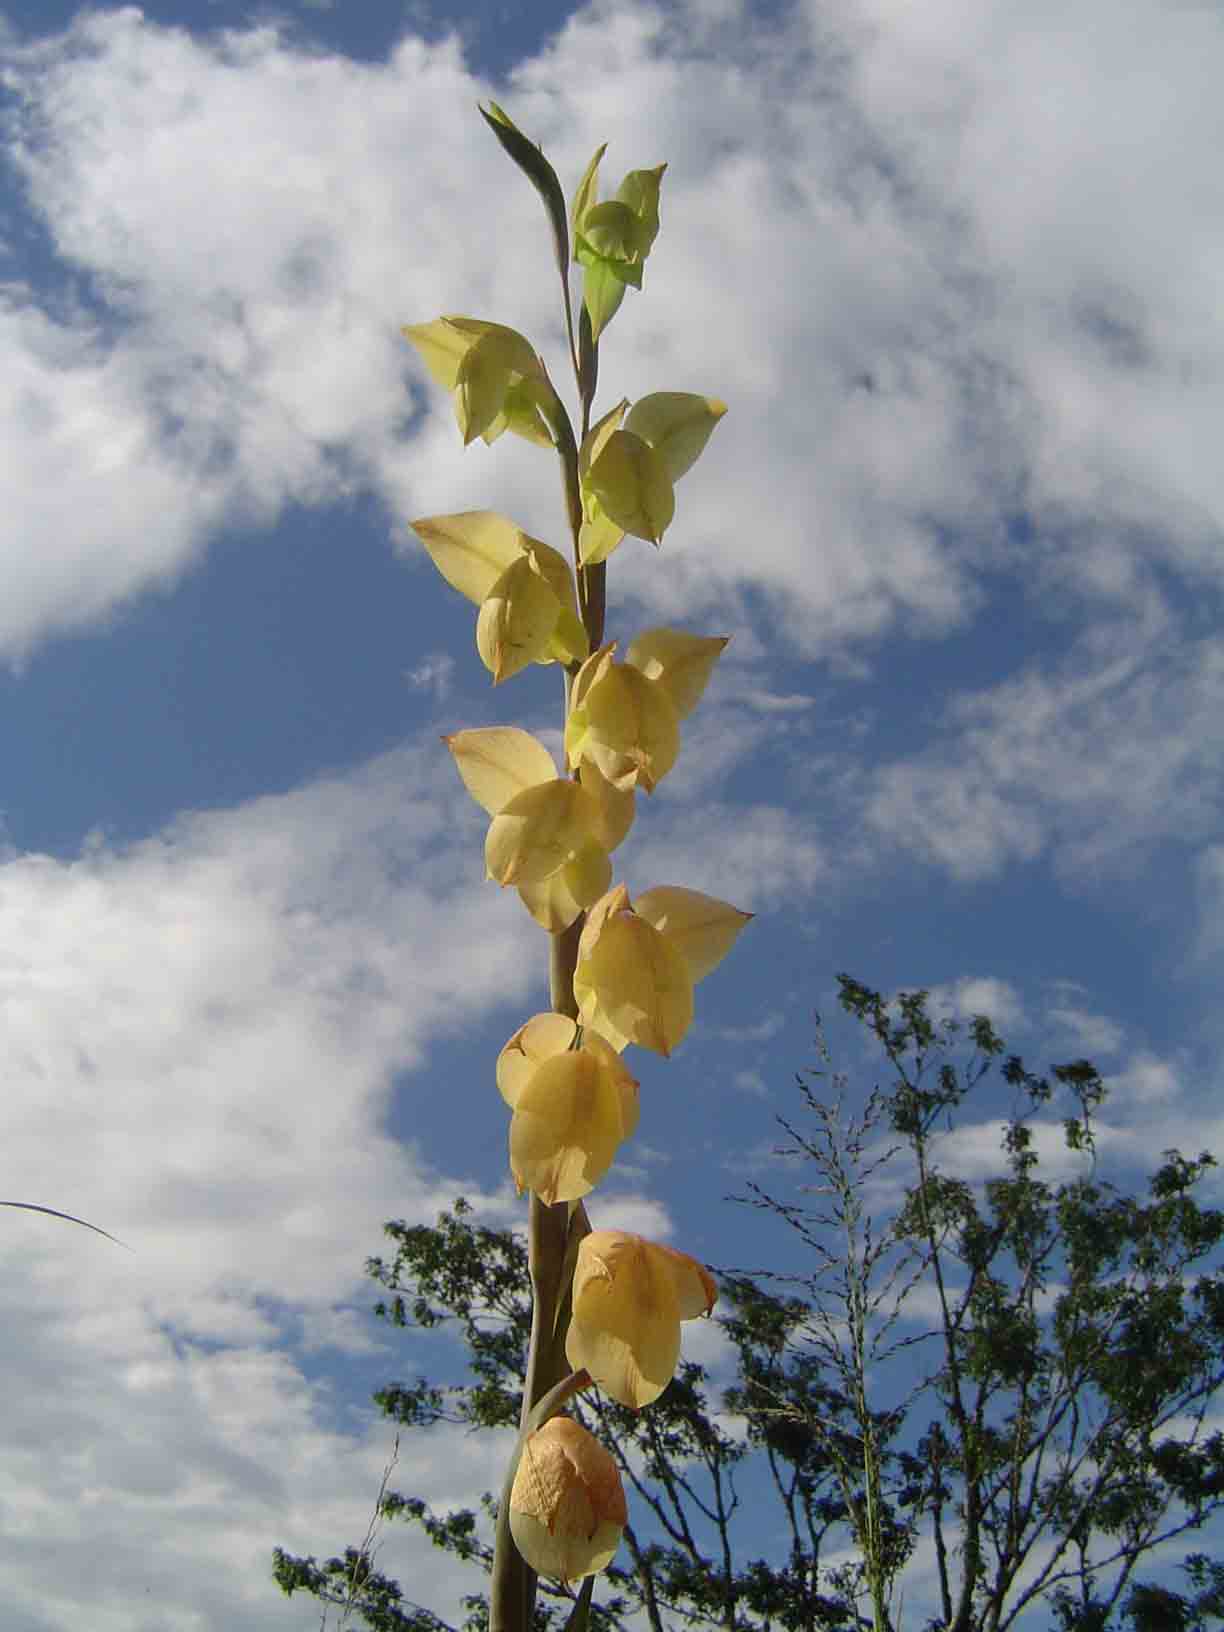 Gladiolus dalenii image